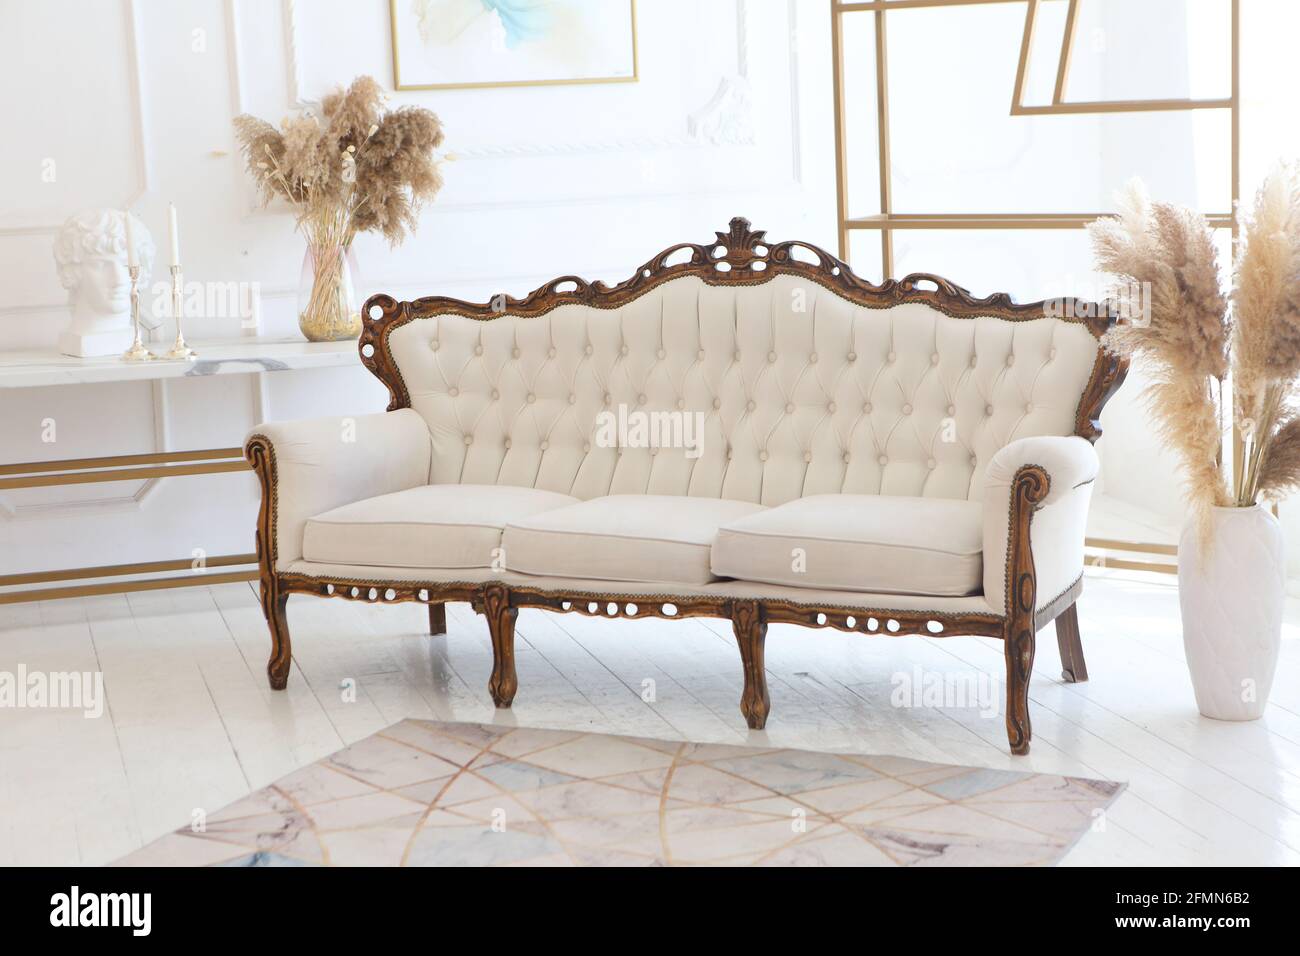 Magnifique canapé dans la chambre Photo Stock - Alamy